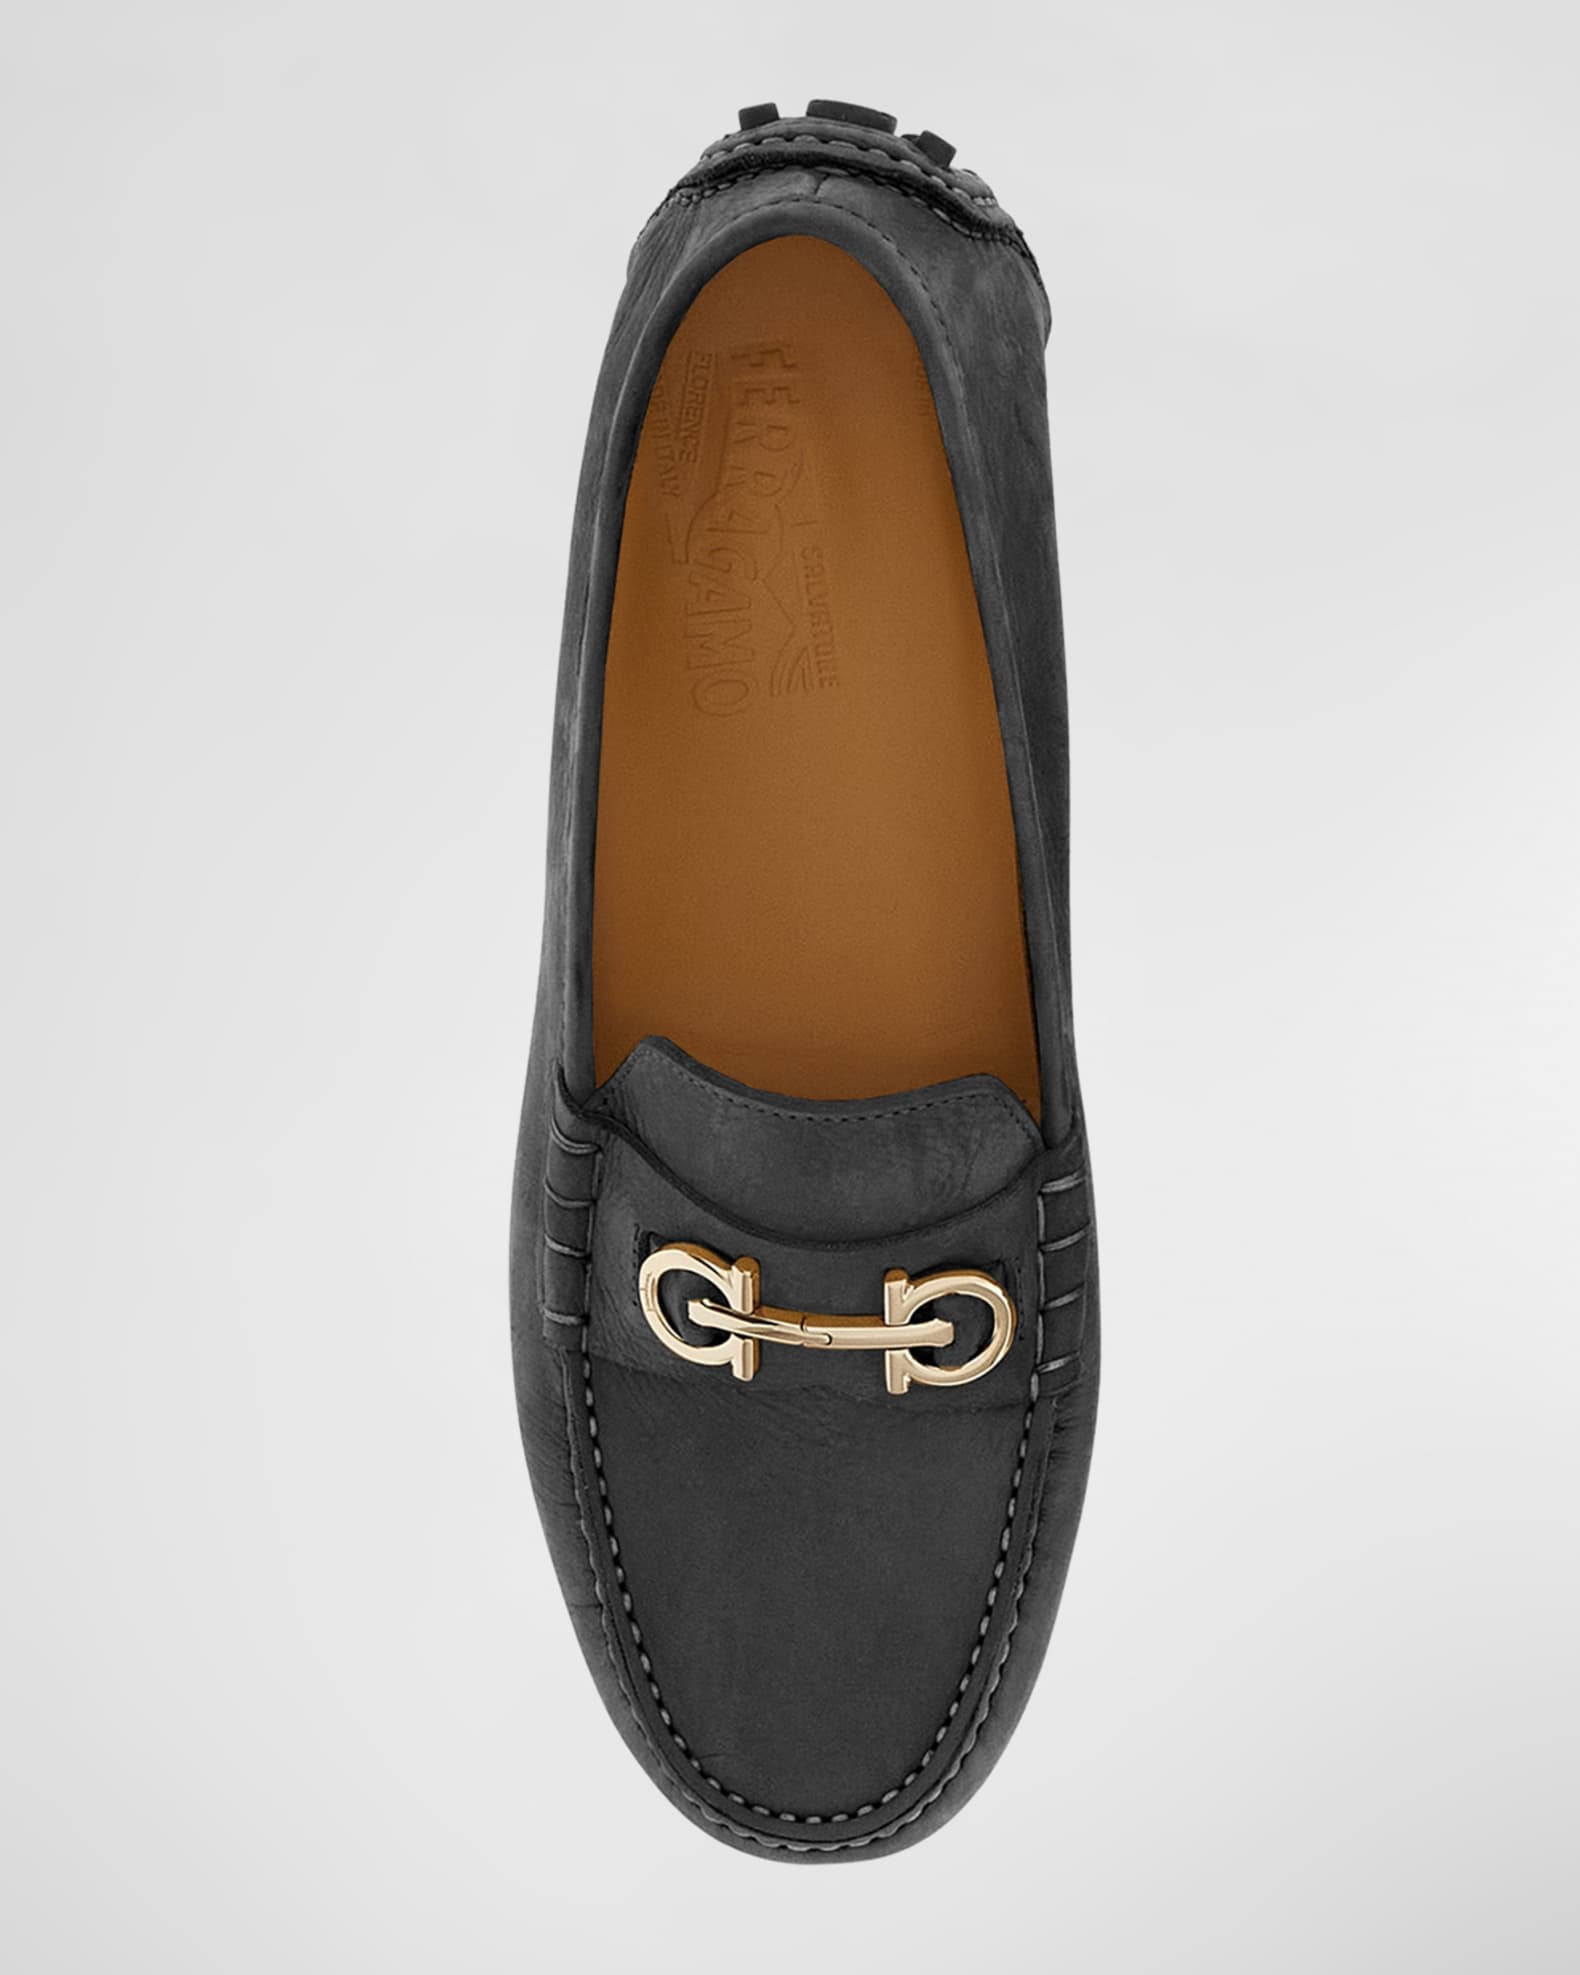 Ferragamo Women's Odilia Leather Loafer - Black - Loafers - 7